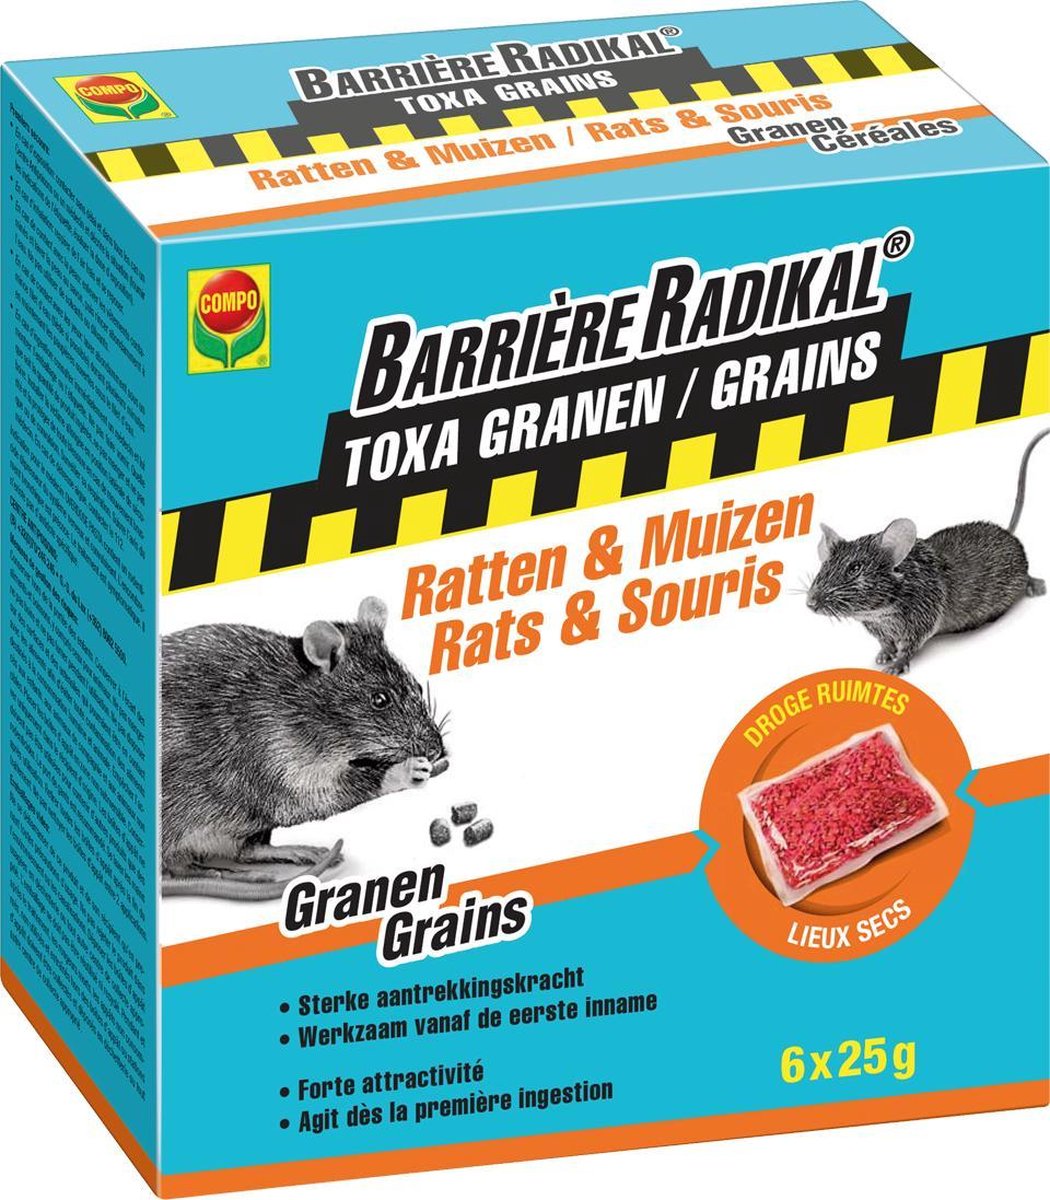 Anti-souris et rats Compo Barrière Radikal Generation Grain'Tech 150g